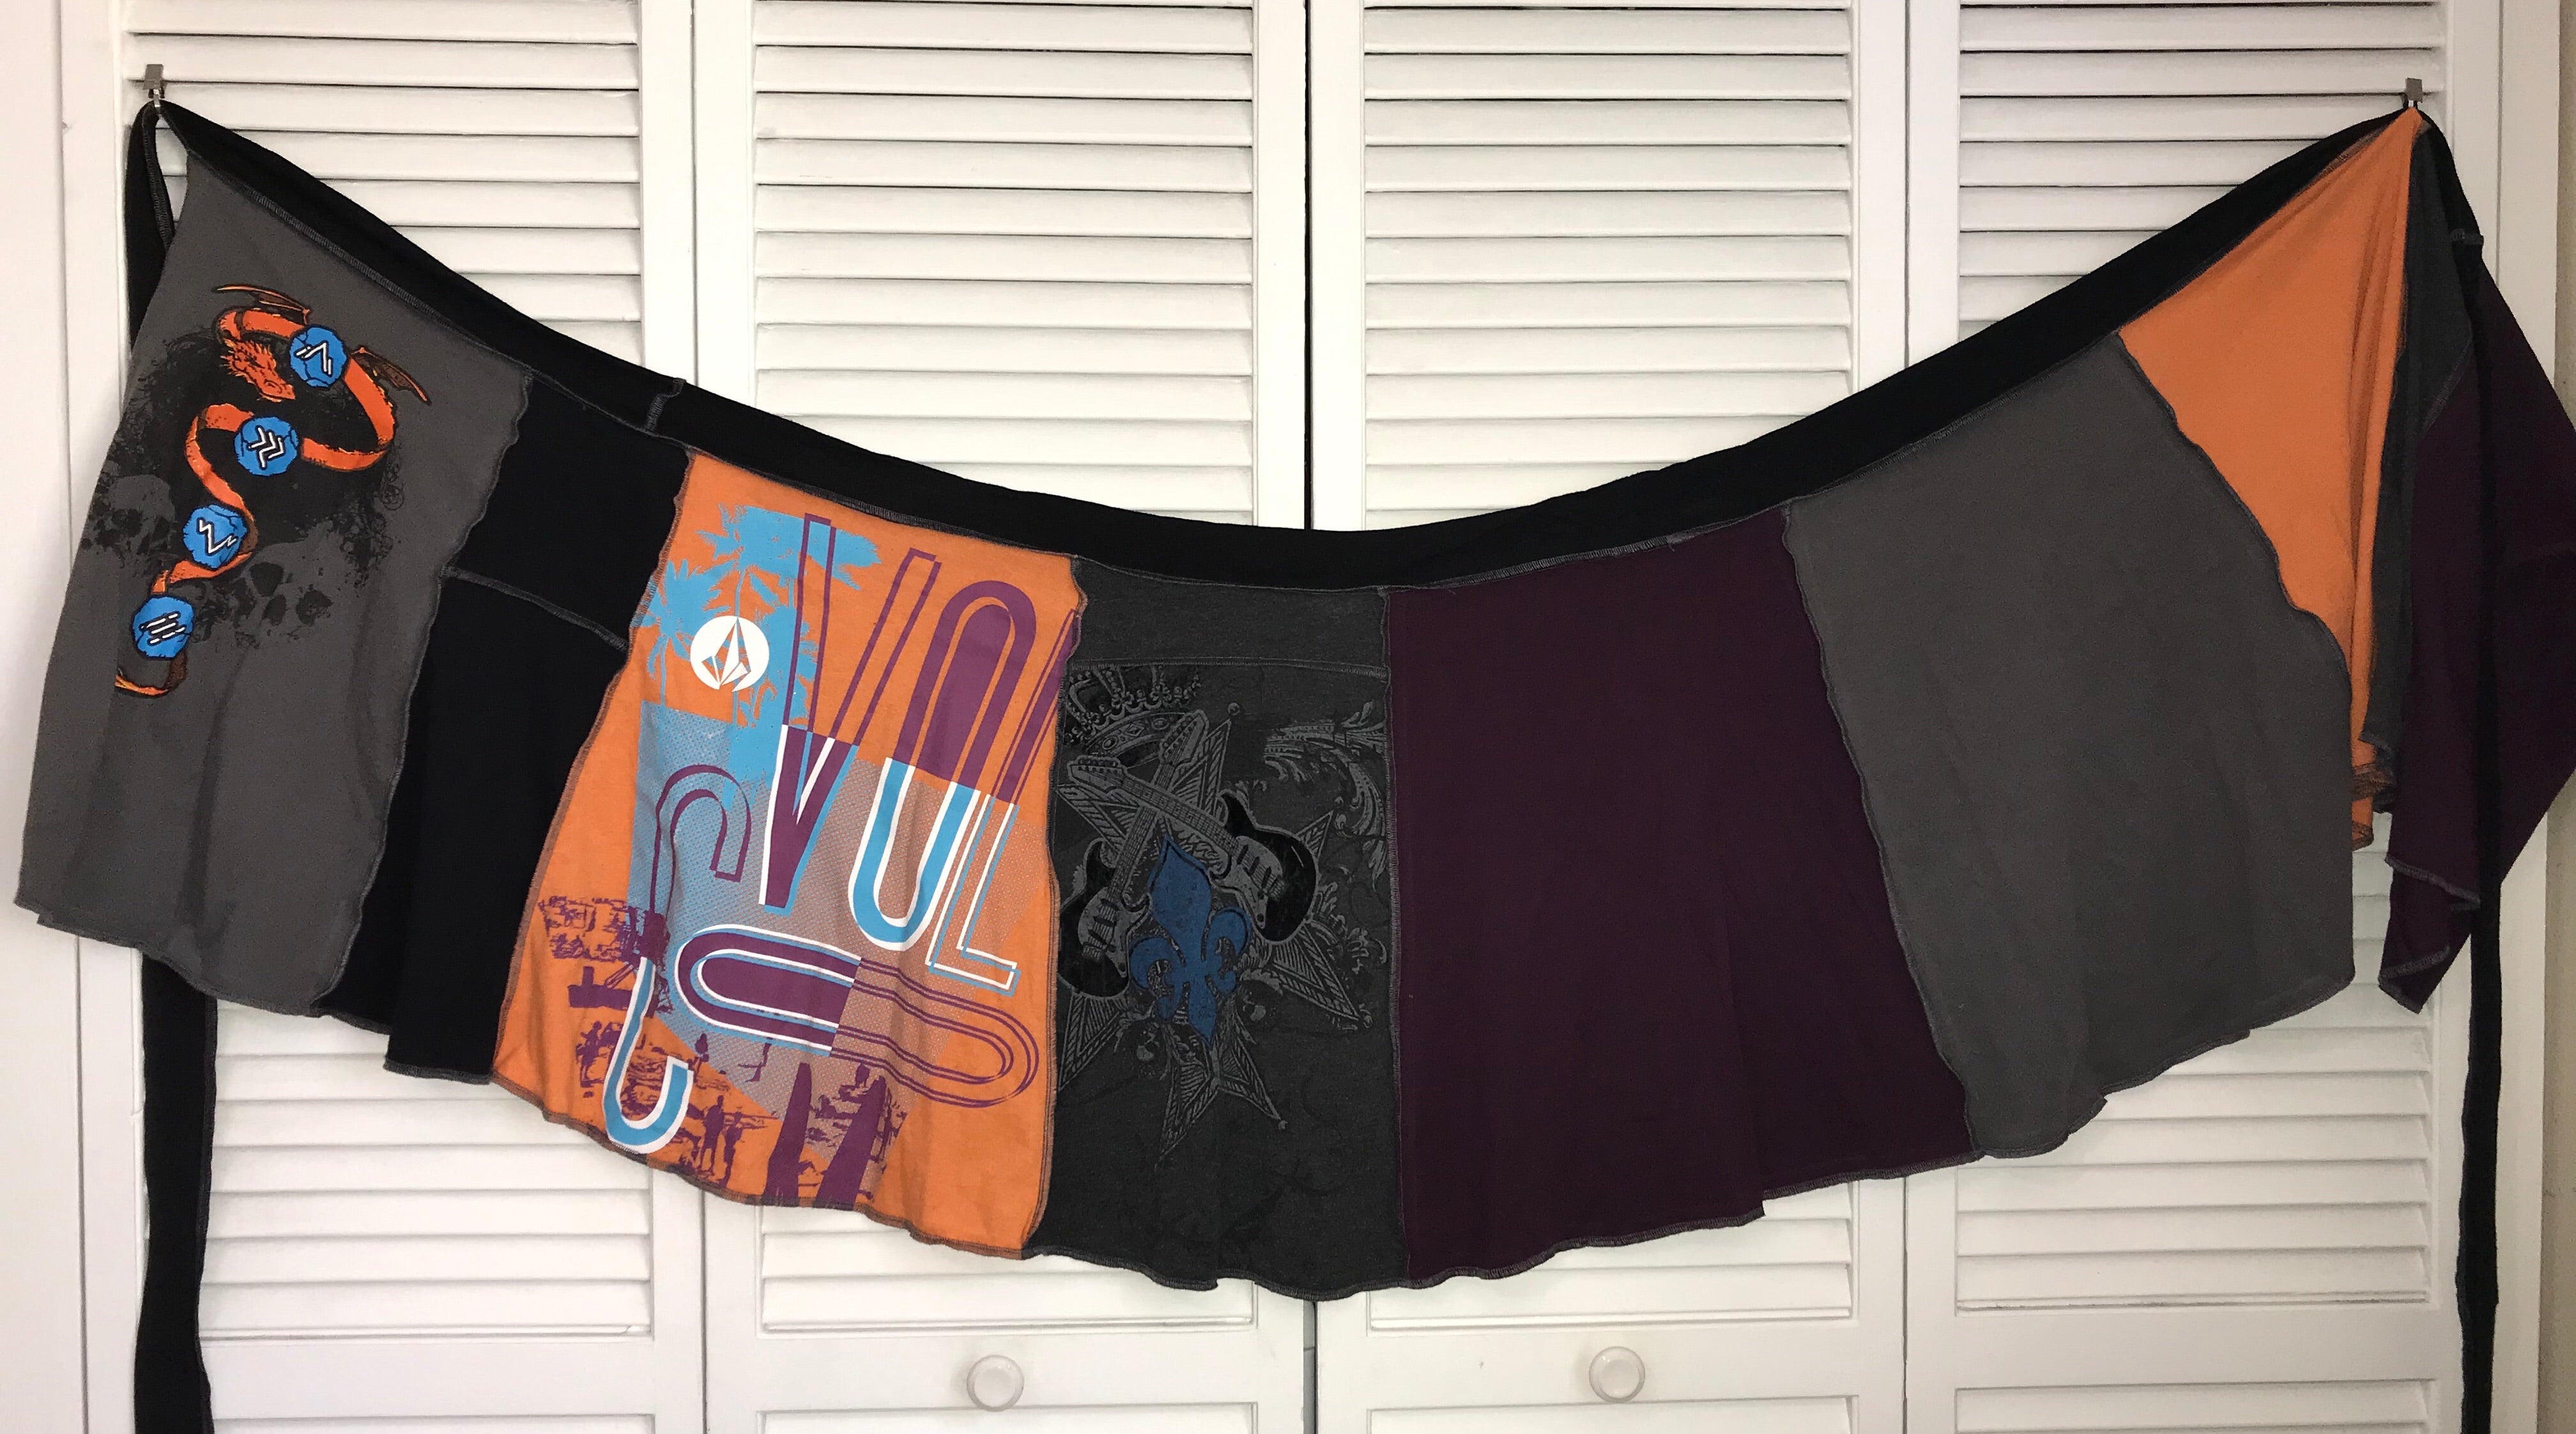 Dragon/Guitar Upcycled T-shirt Wrap Skirt